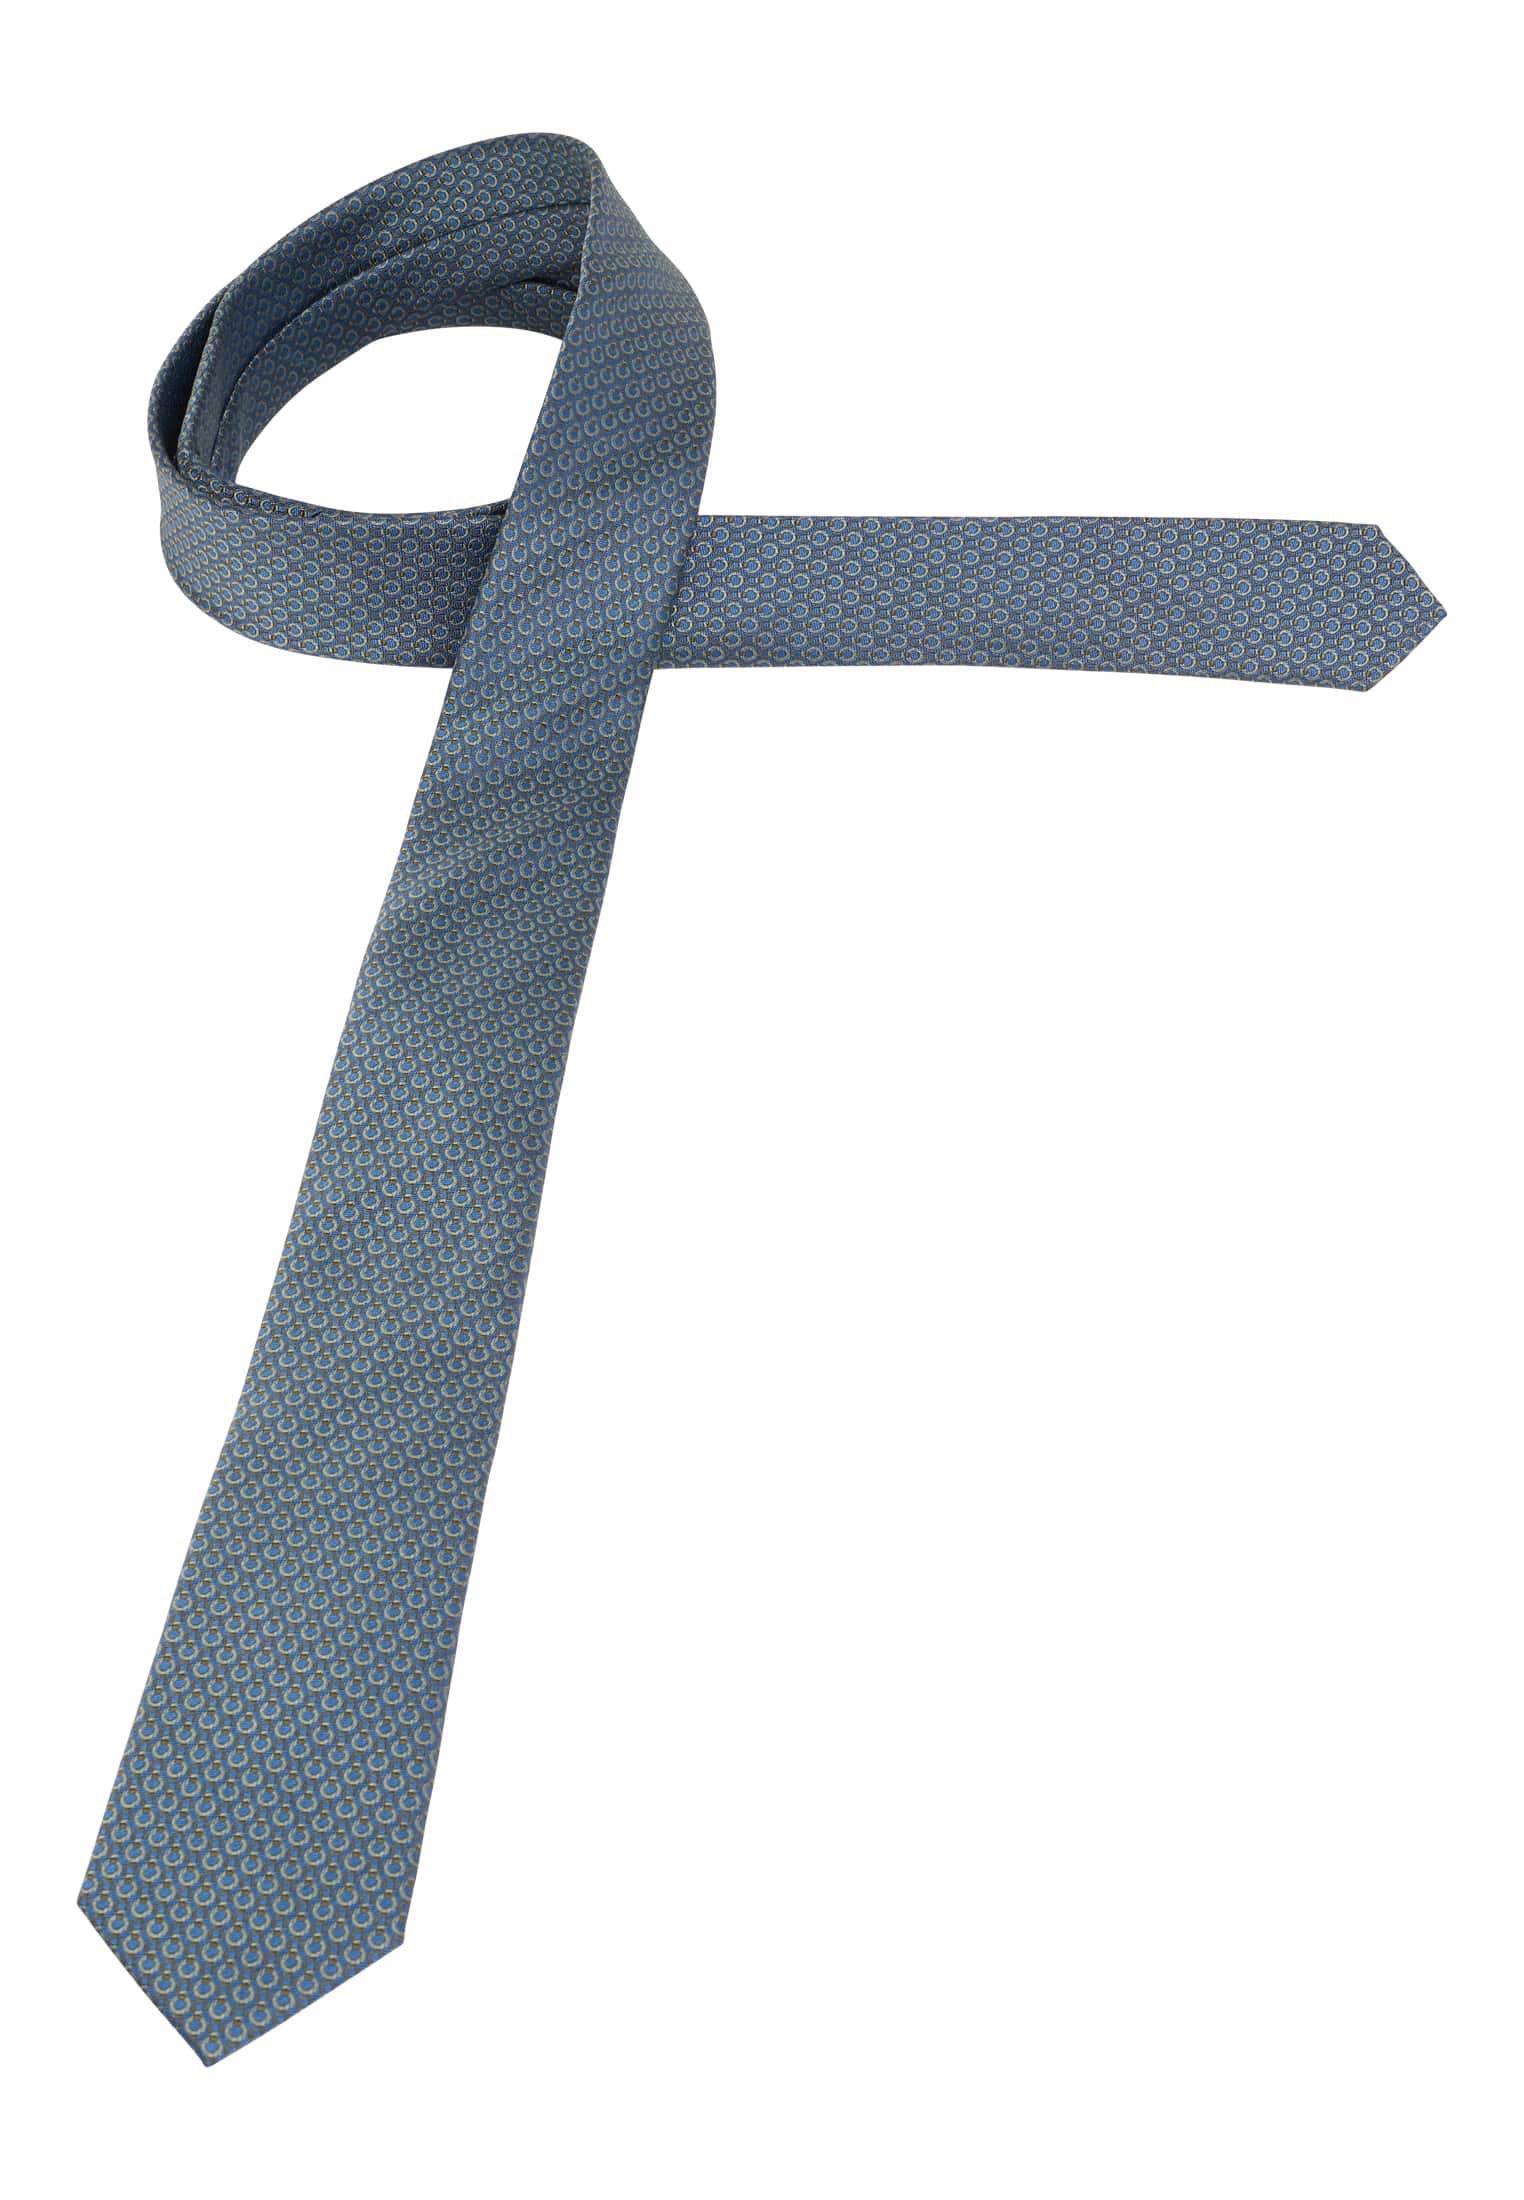 Krawatte in blau/grün strukturiert | blau/grün | 142 | 1AC01948-81-48-142